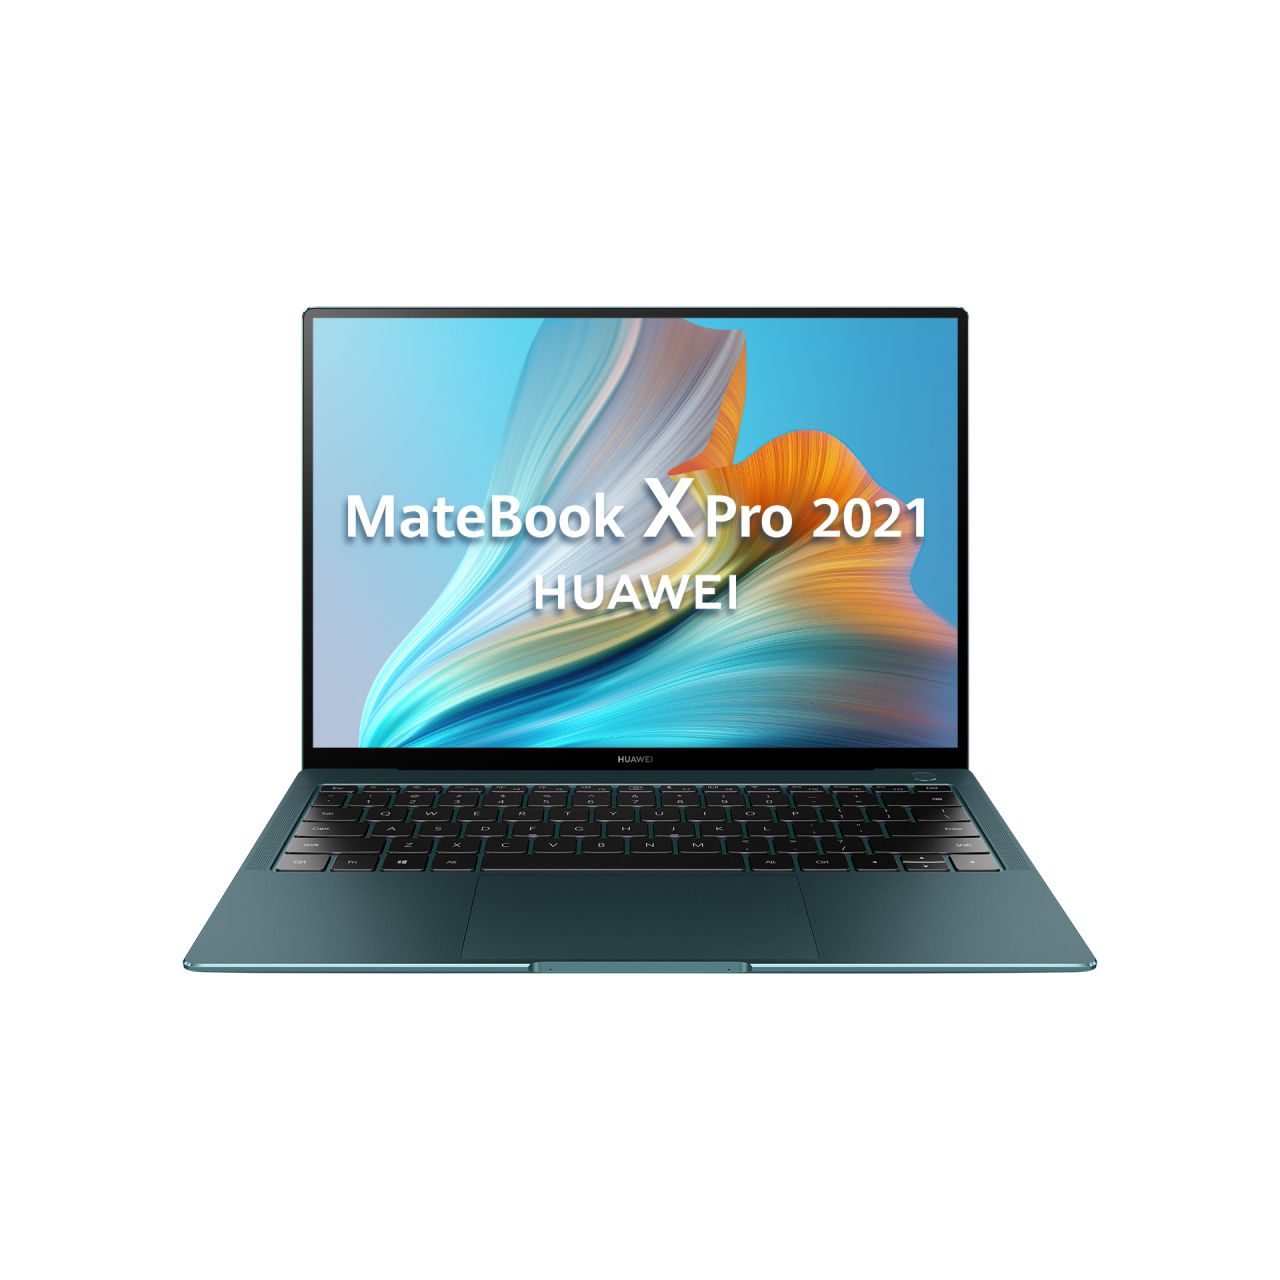 MateBook X Pro 2021 Emerald Green